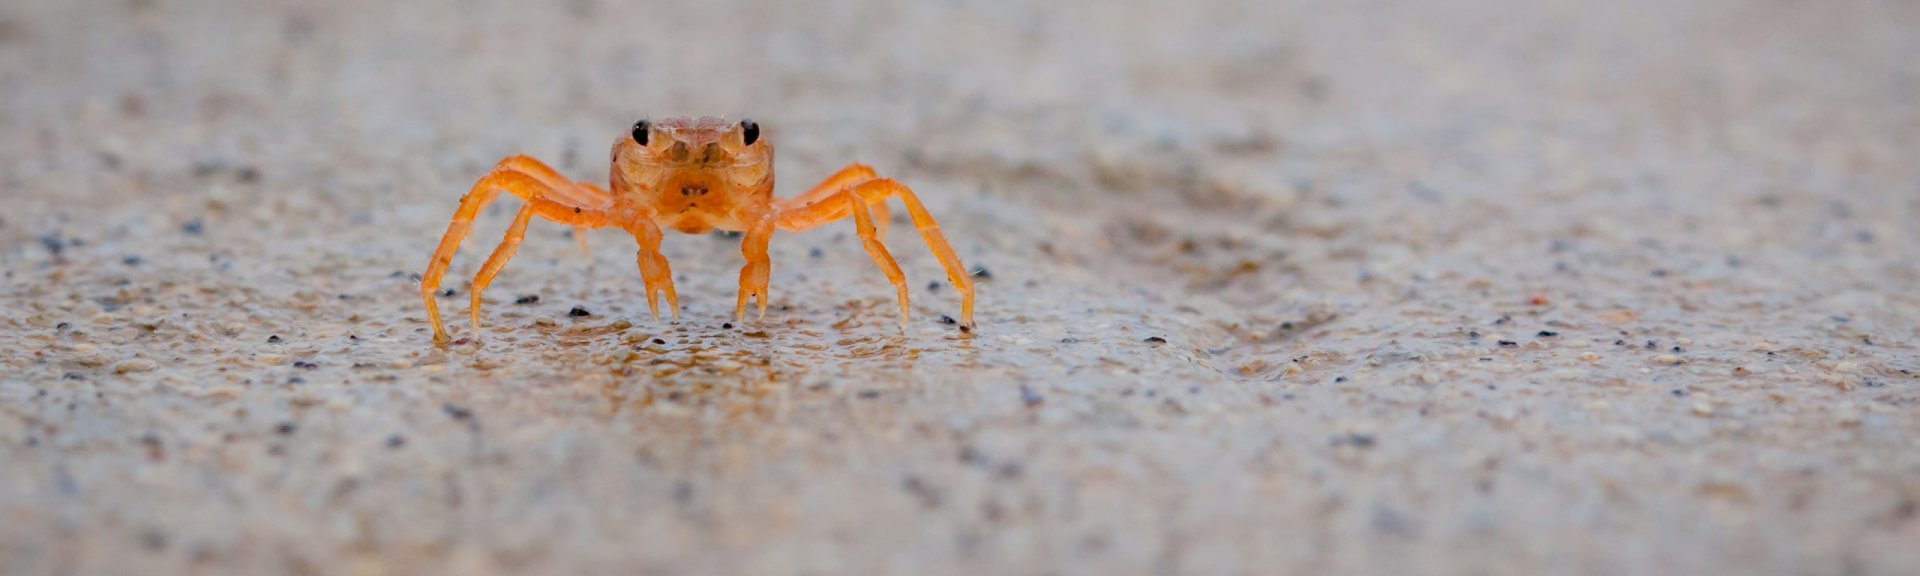 Baby red crab. Photo: [Wondrous World Images](https://www.wondrousworldimages.com.au)